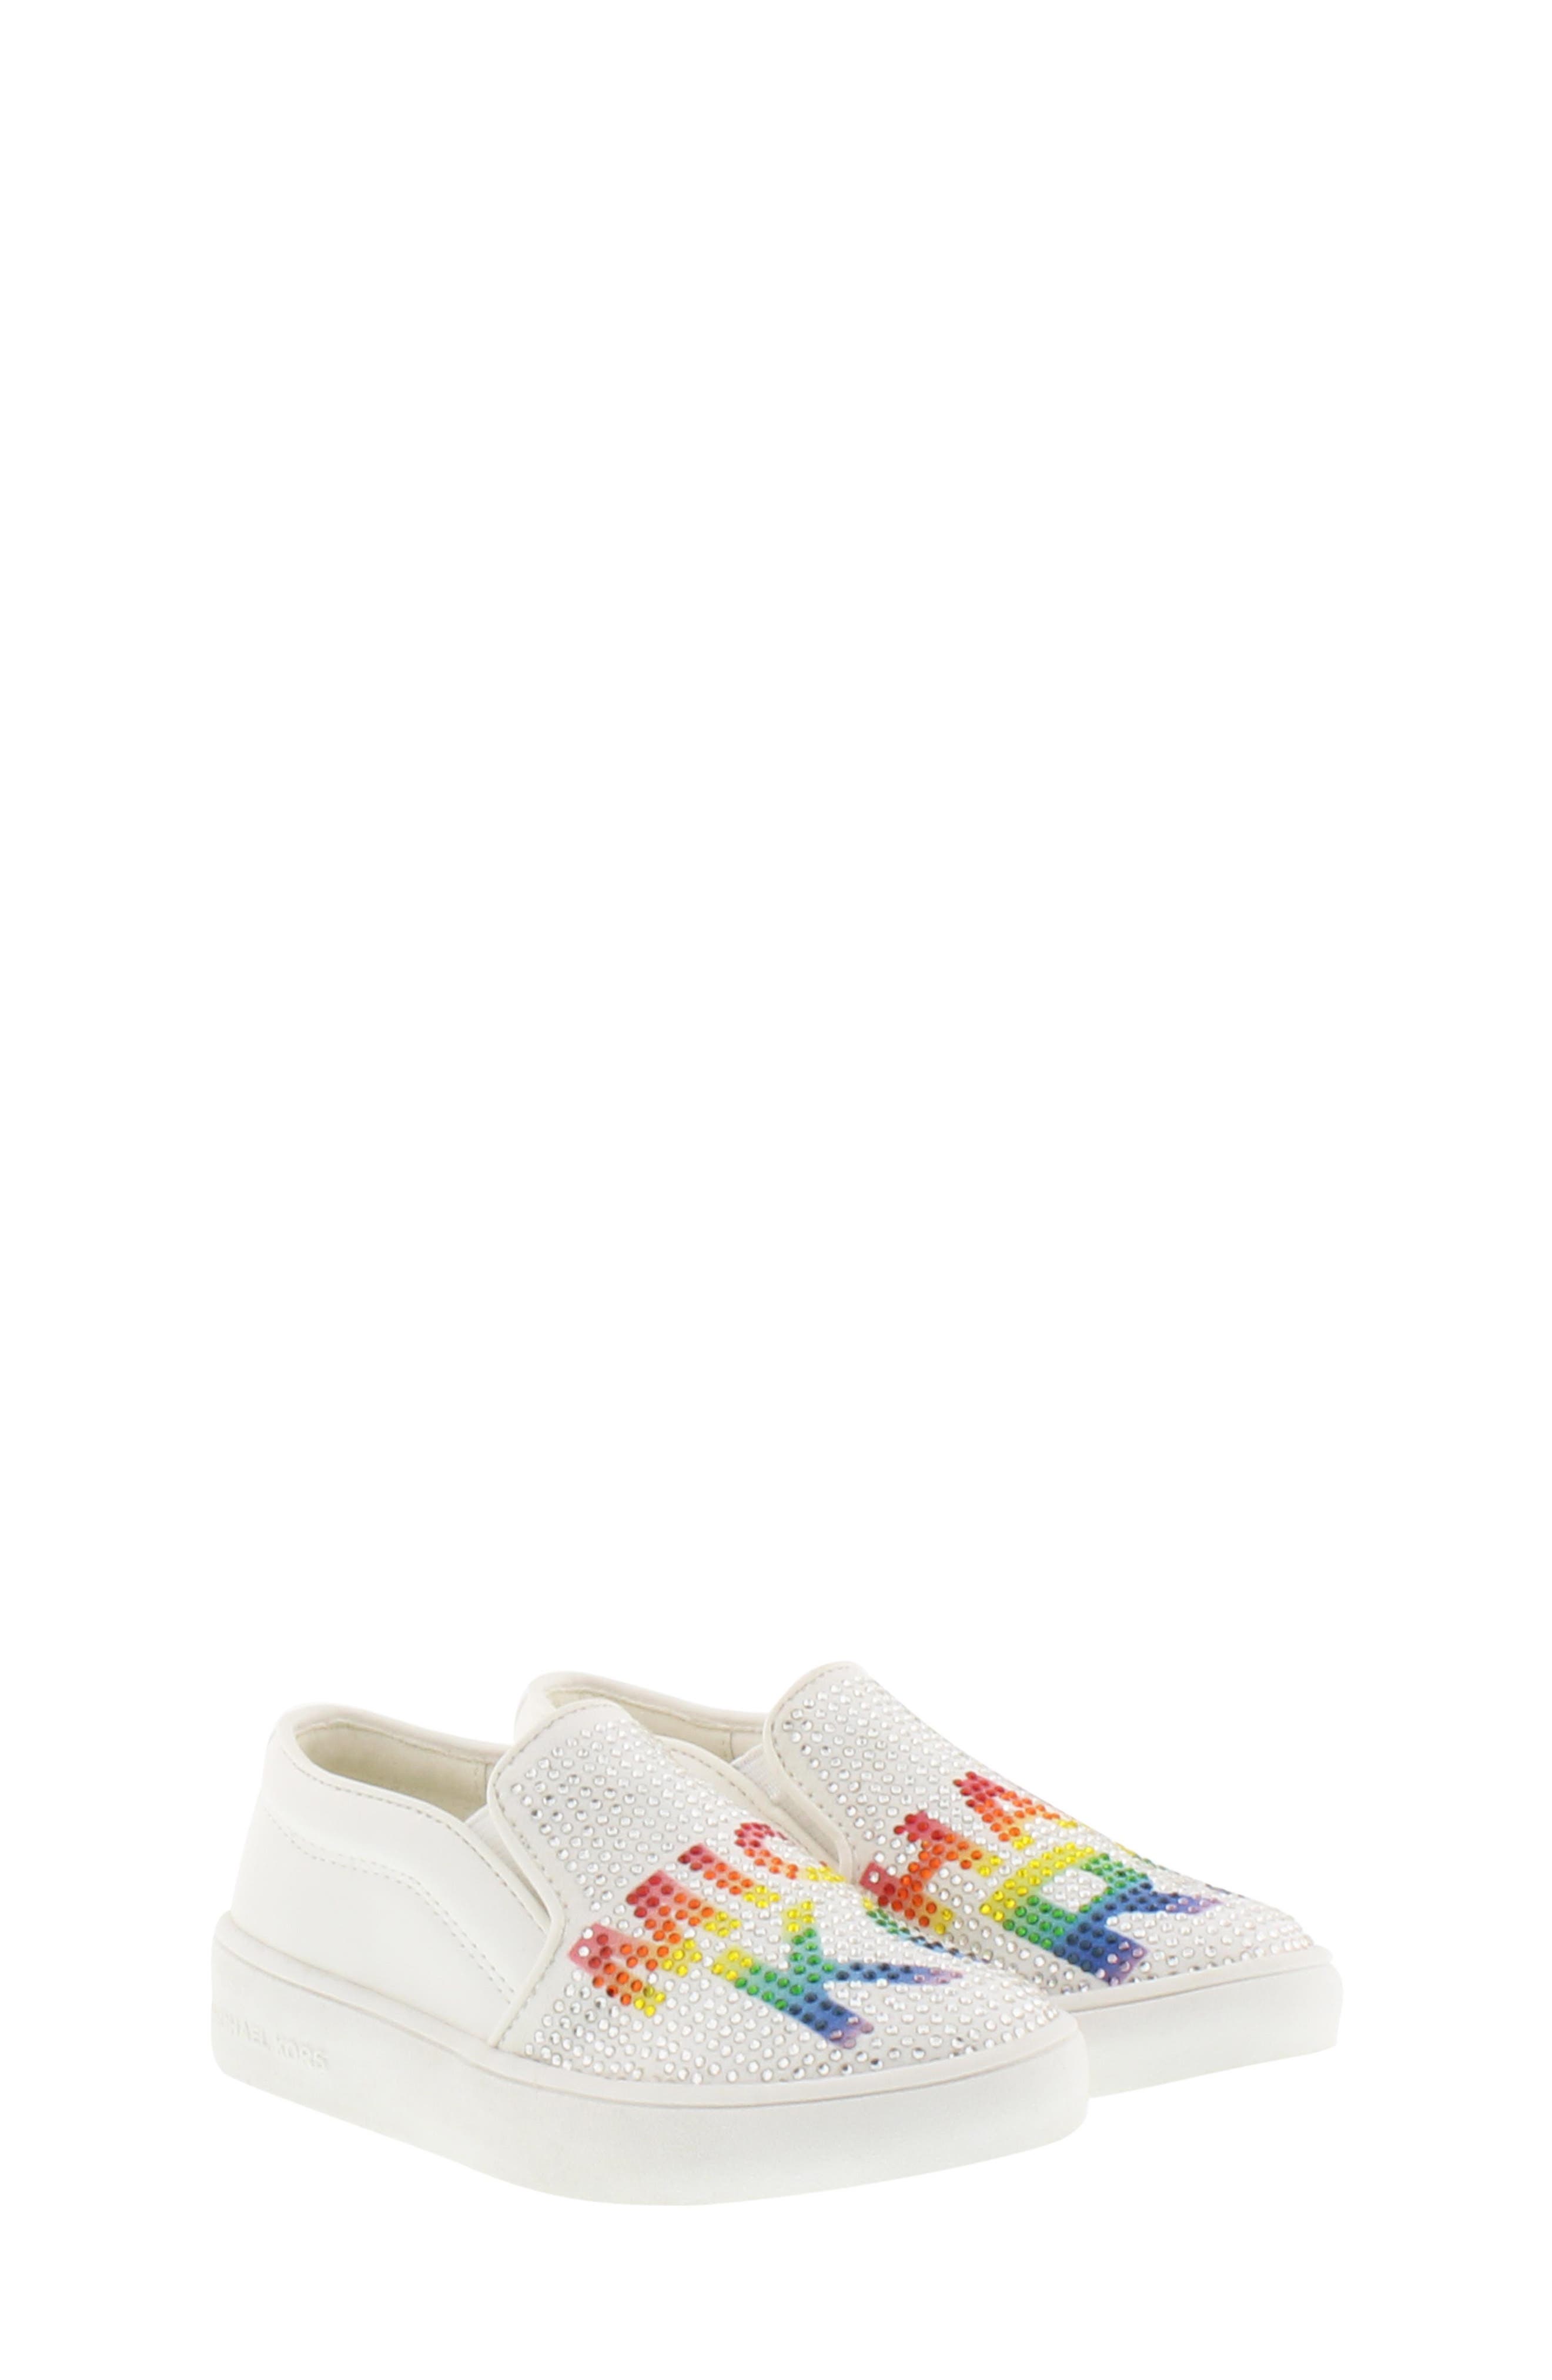 michael kors rainbow sneakers